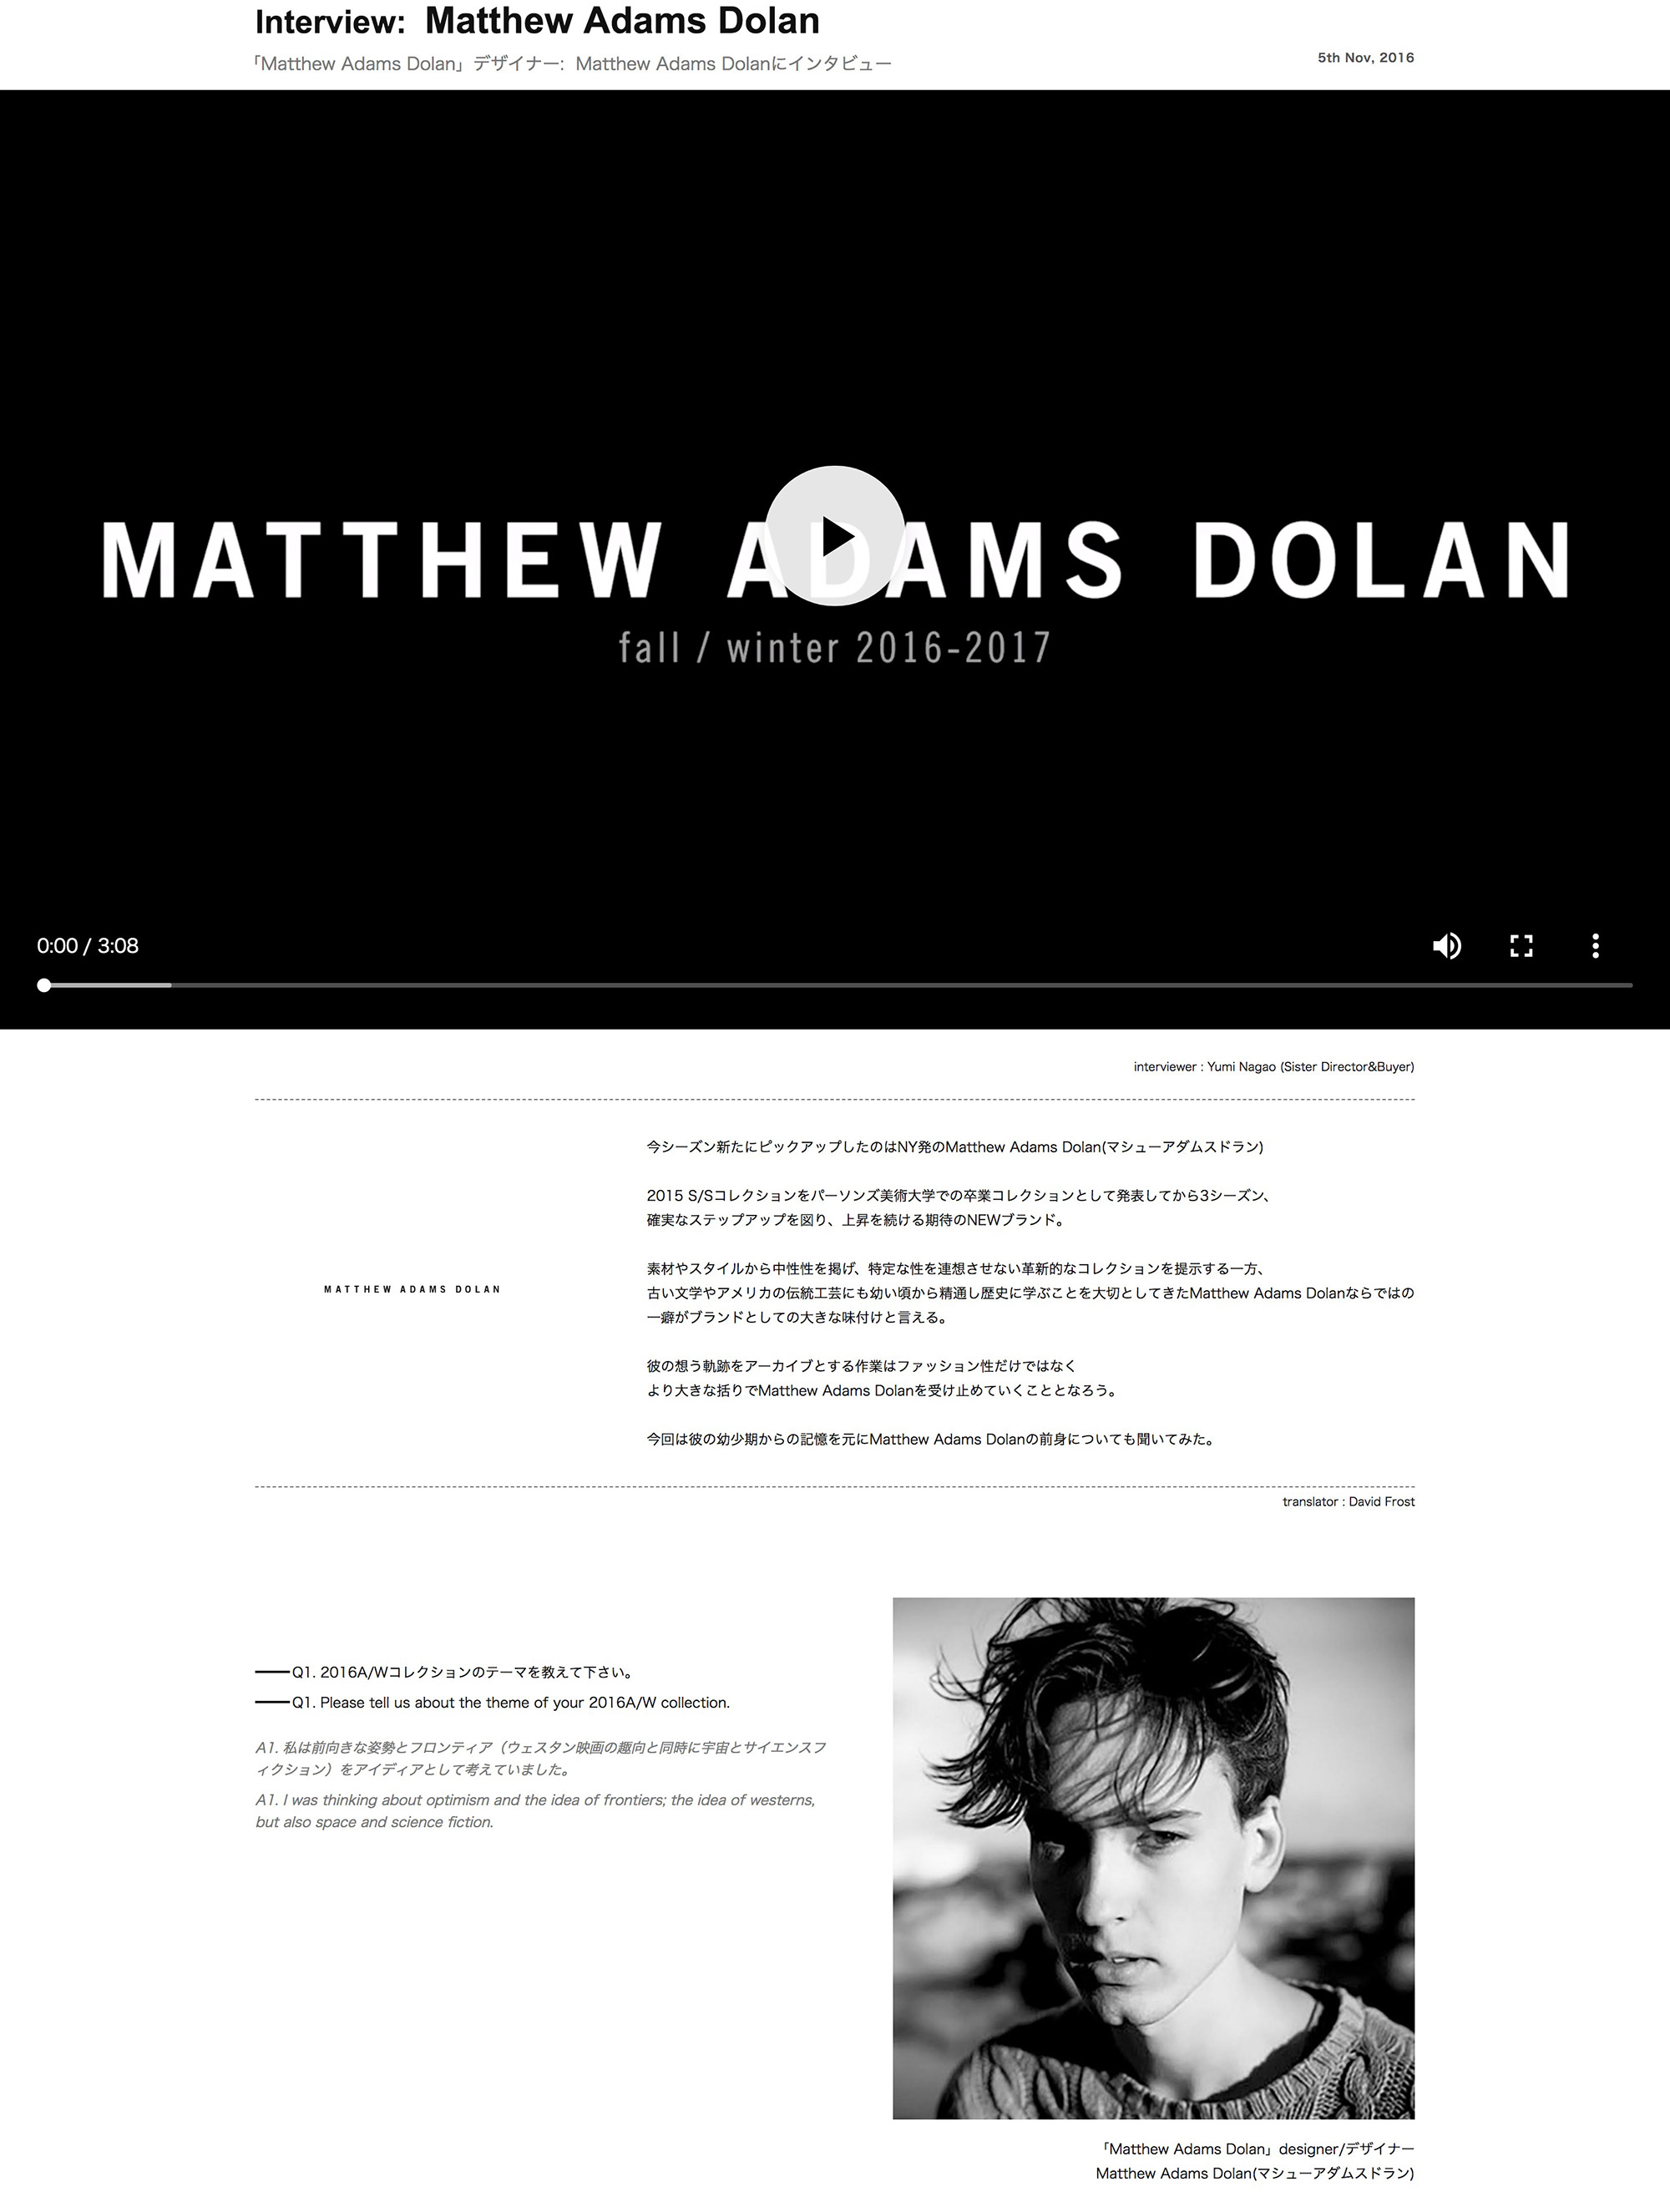 Matthew Adams Dolan Special Interview